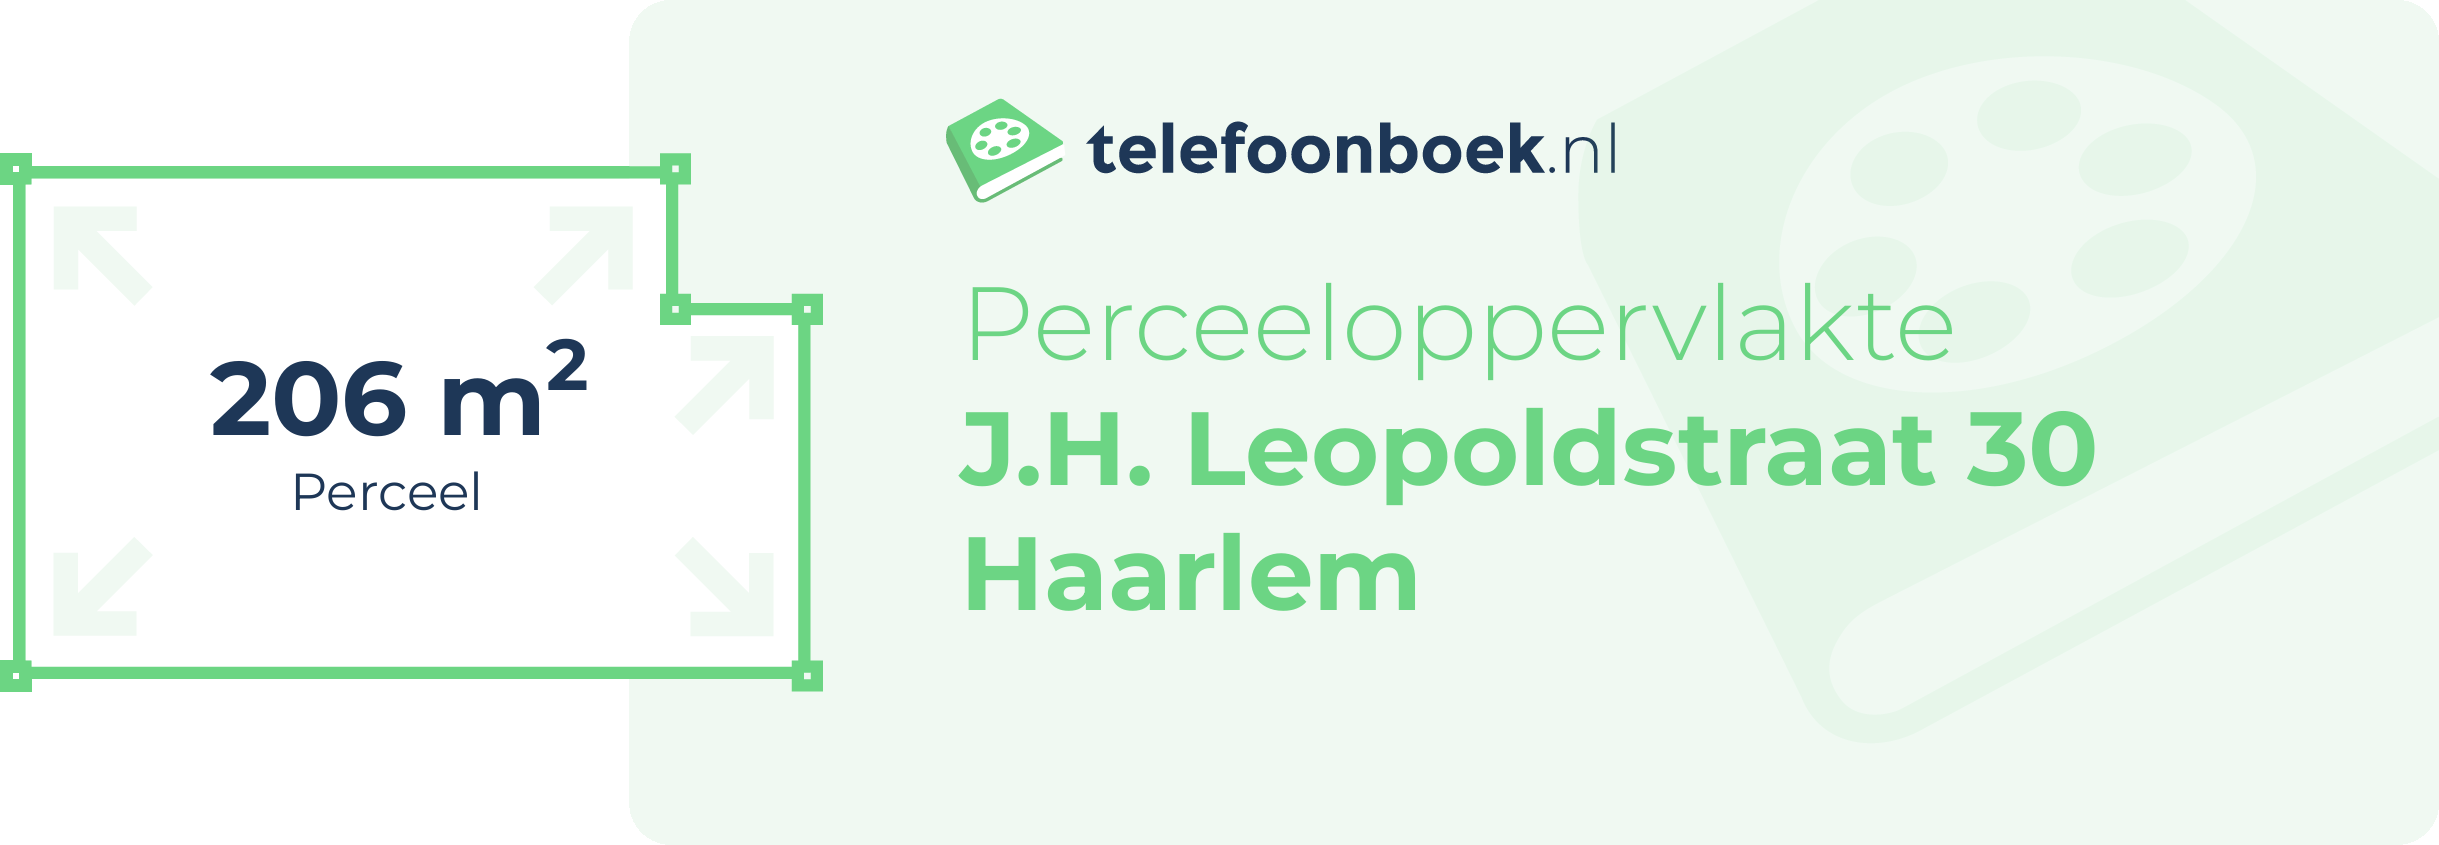 Perceeloppervlakte J.H. Leopoldstraat 30 Haarlem